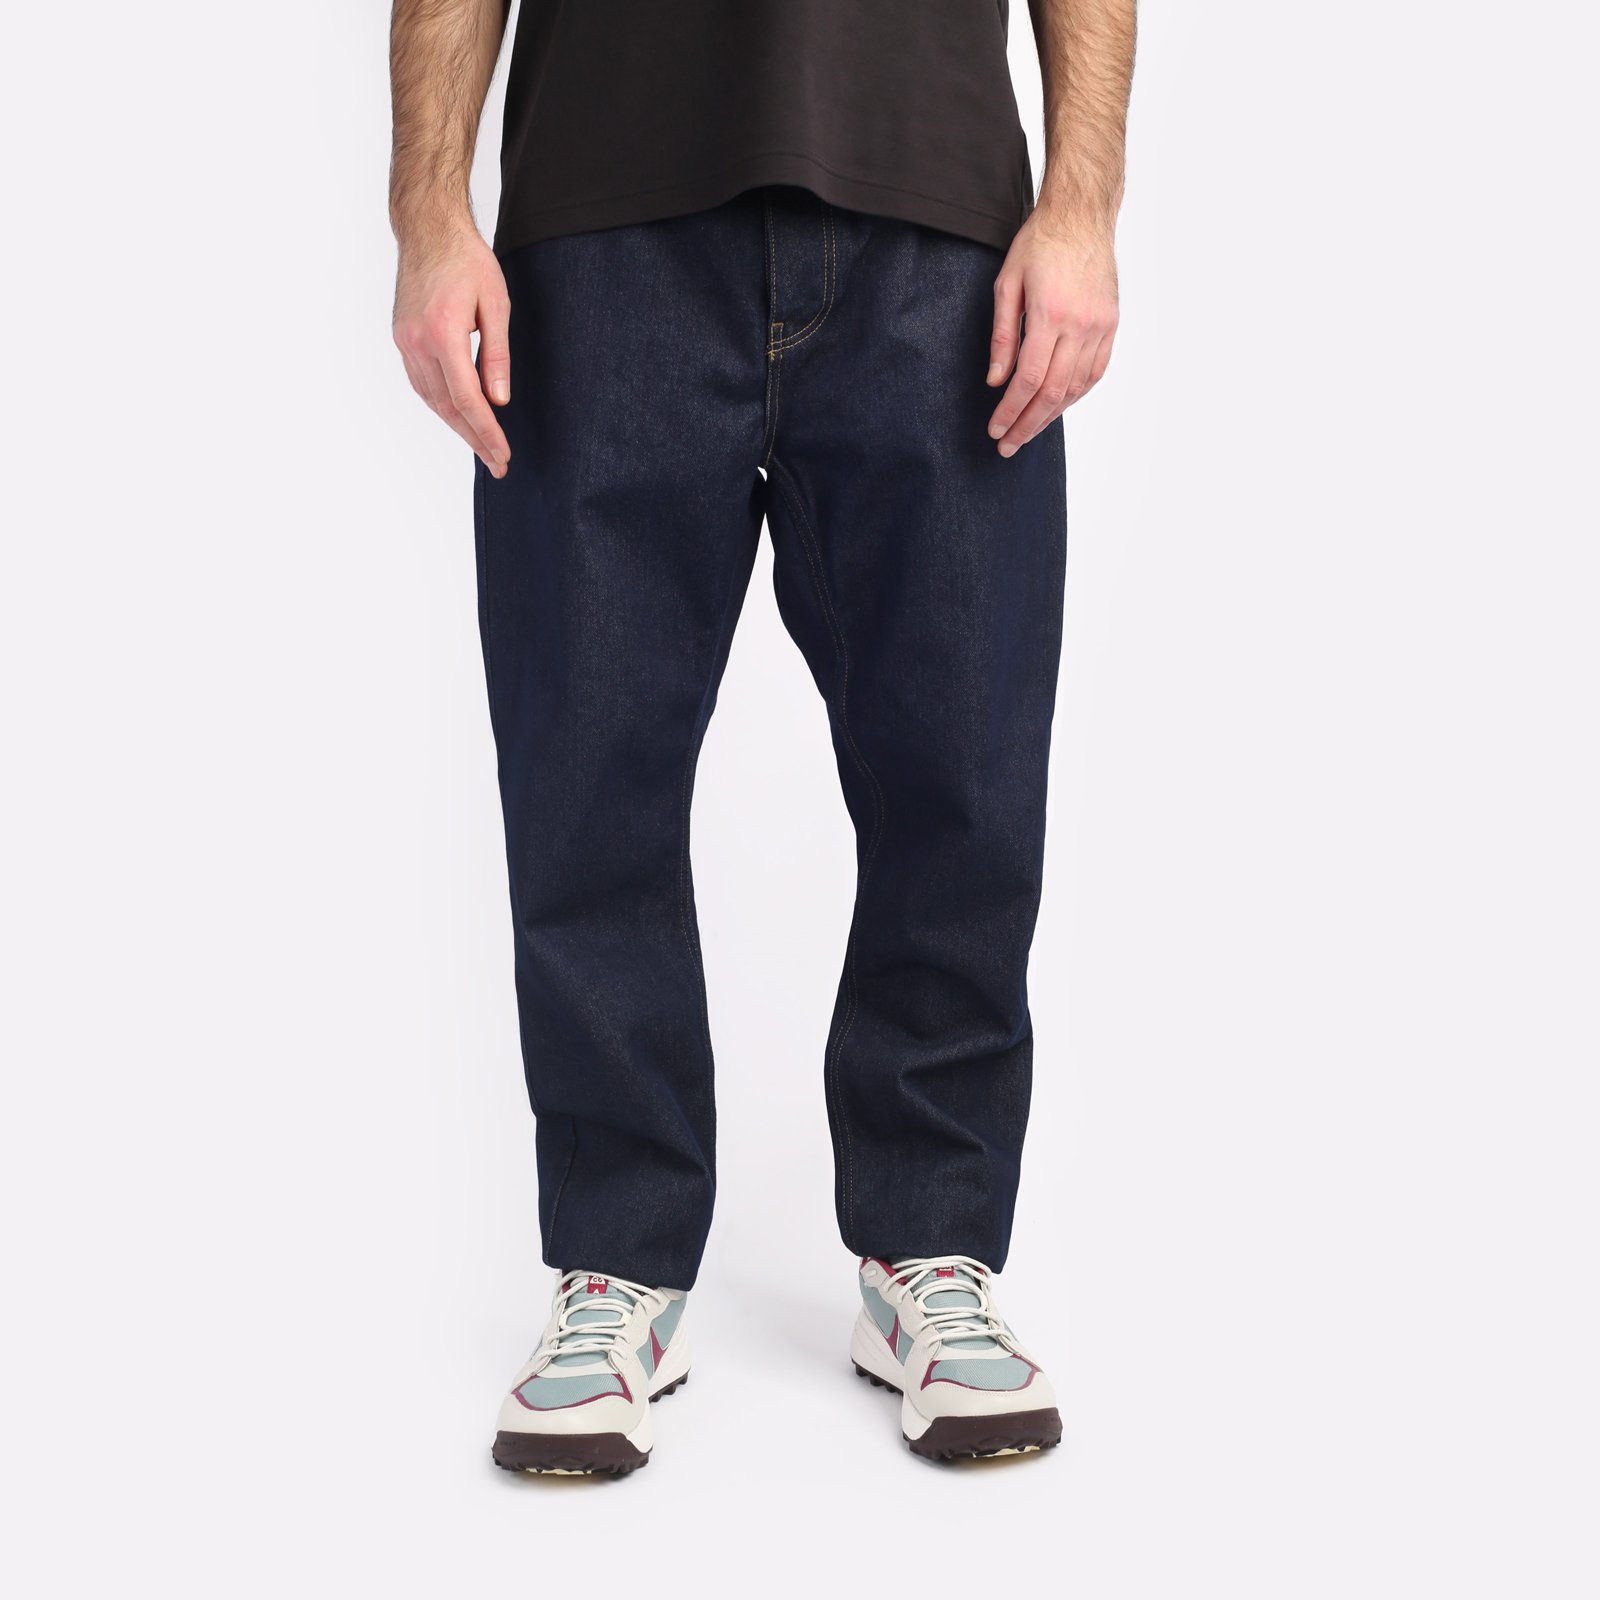 мужские синие брюки Carhartt WIP Maitland I029208-blue - цена, описание, фото 1